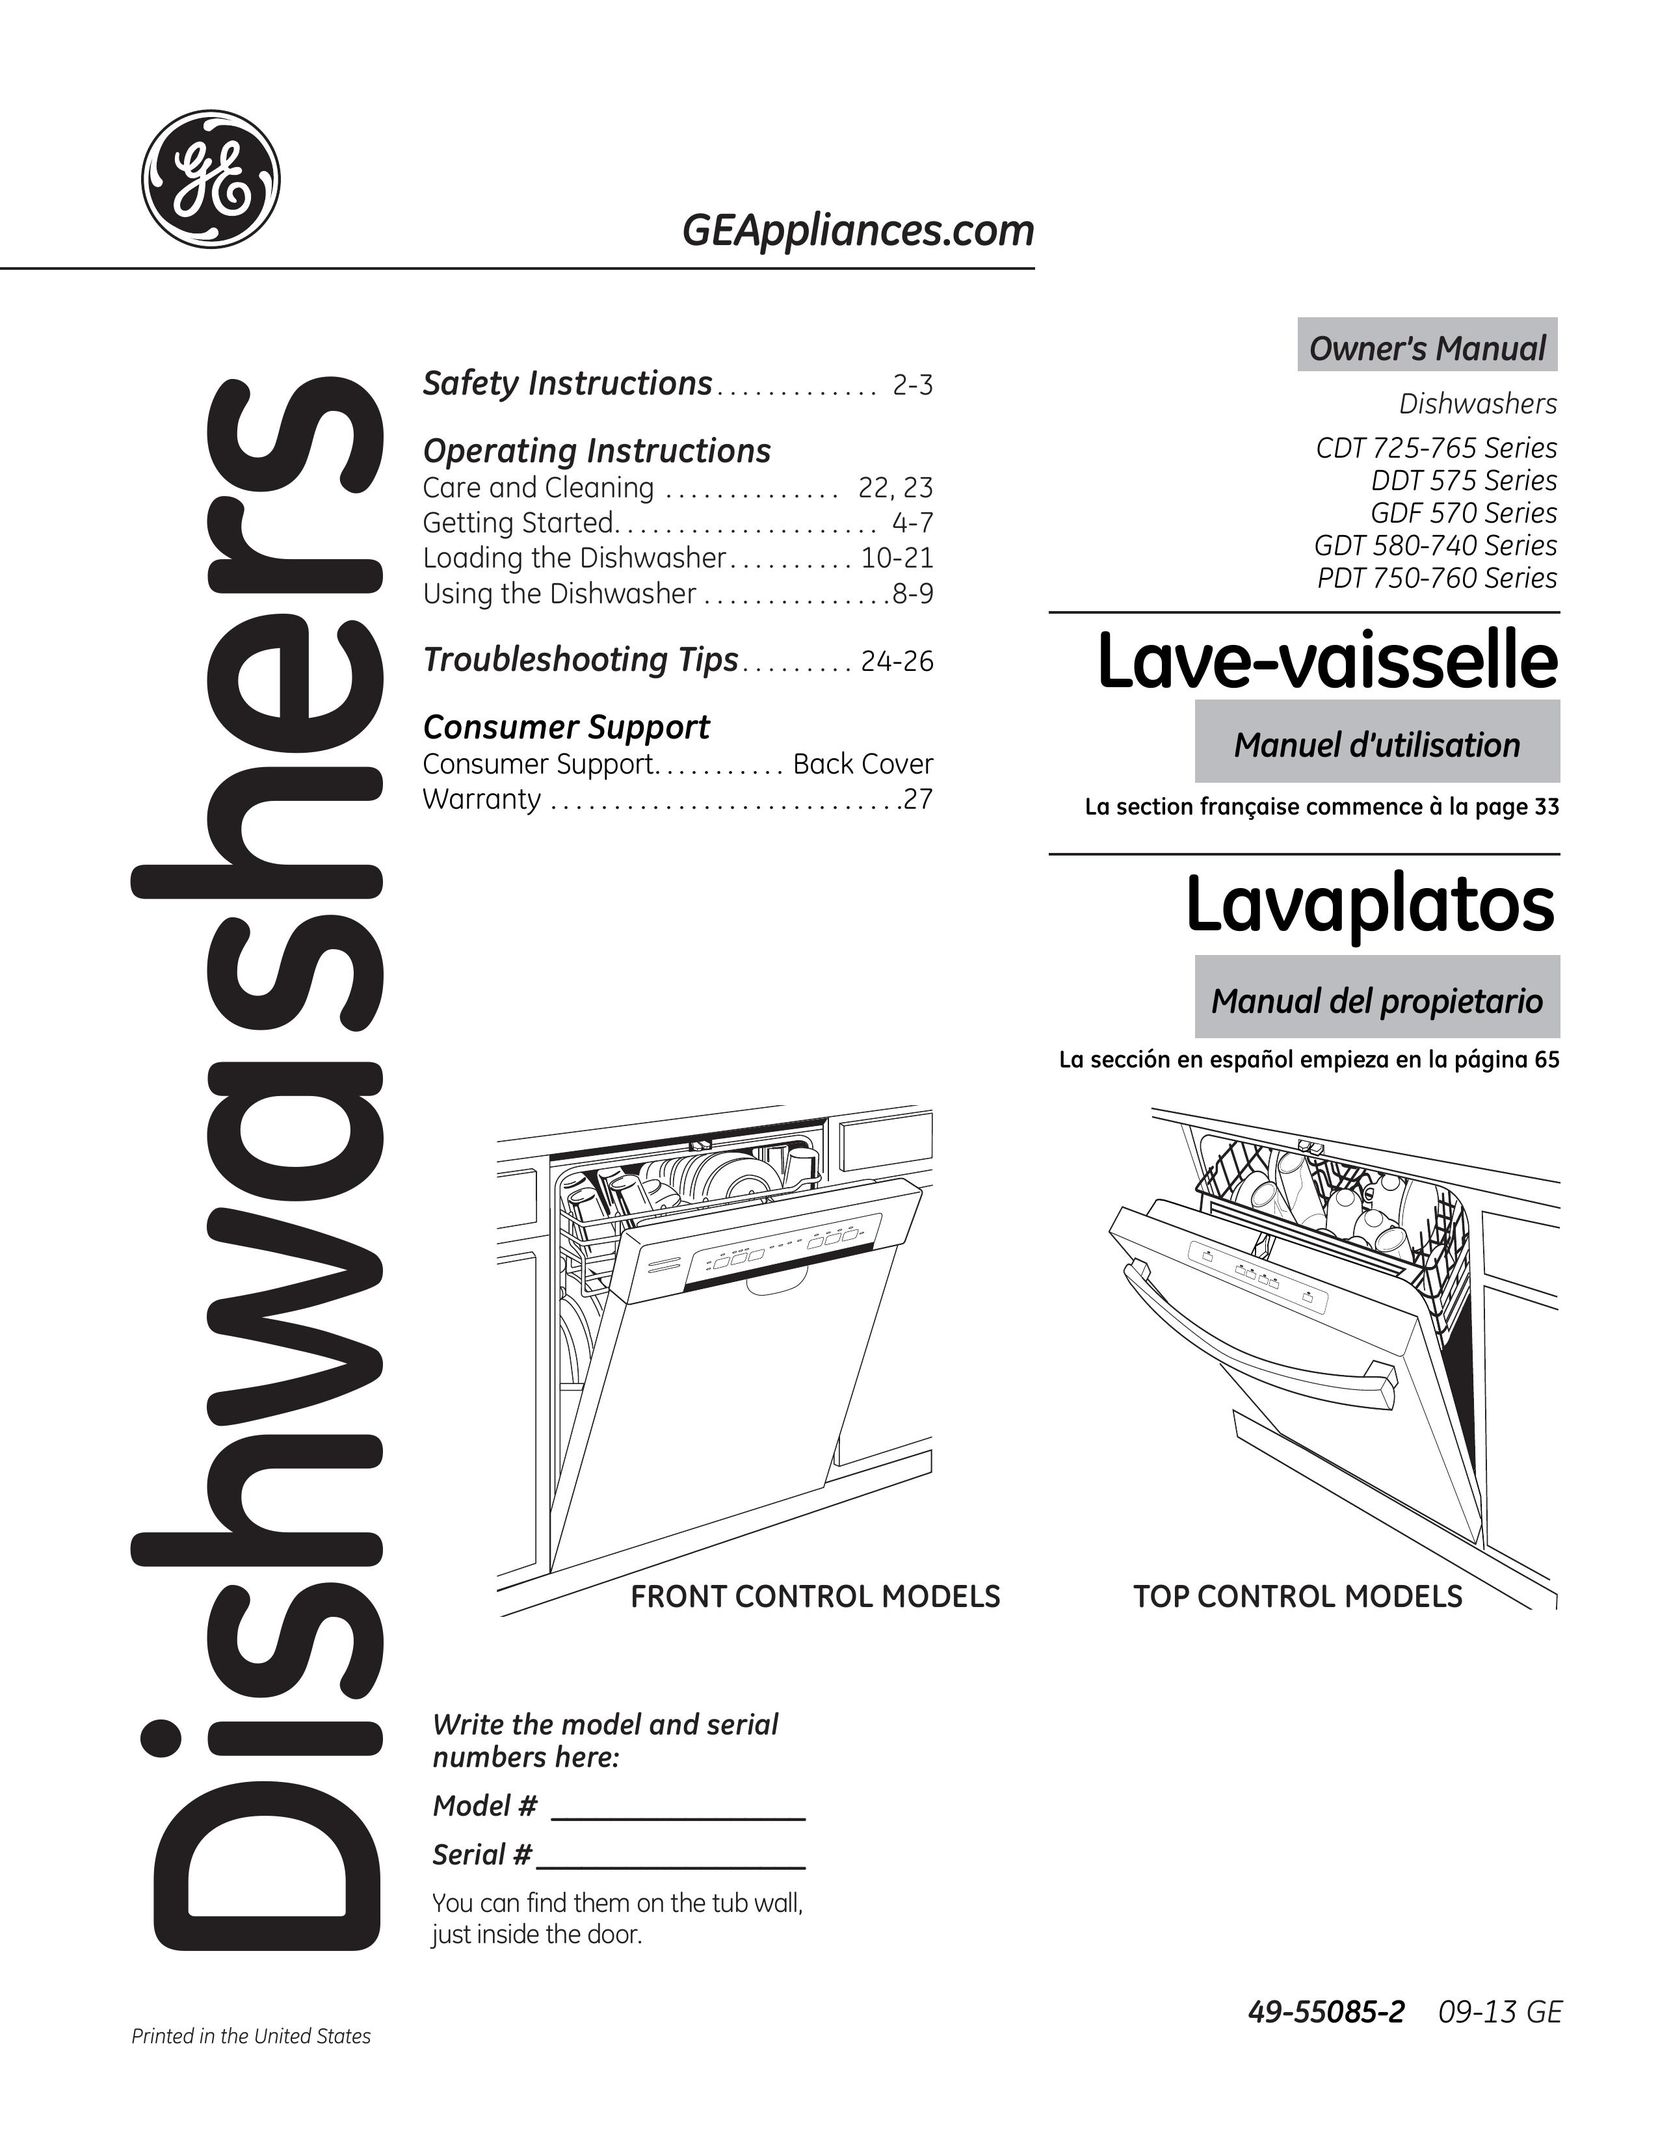 GE CDT725-765 Dishwasher User Manual